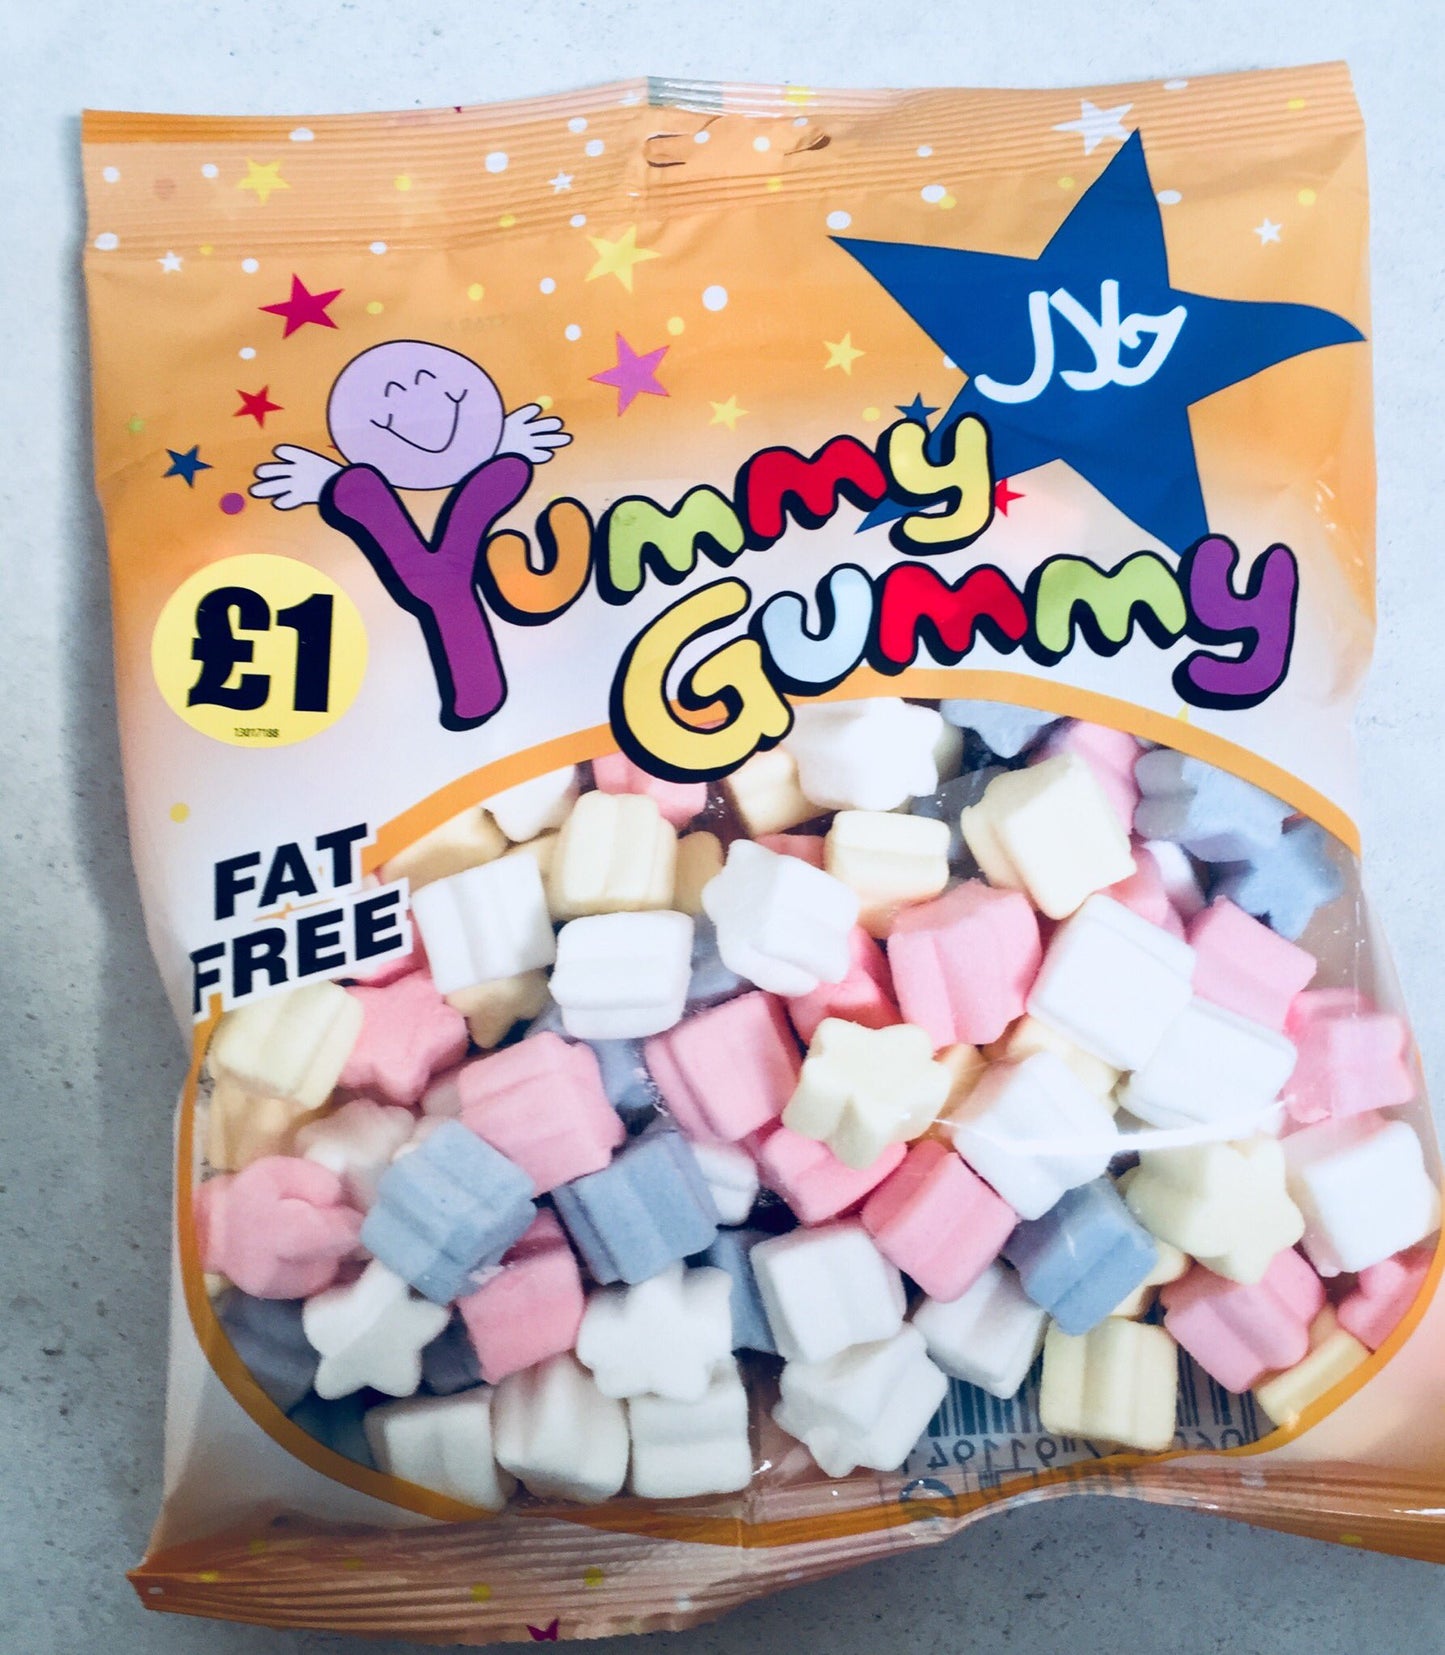 Yummy Gummy Star Marshmallow Fat Free